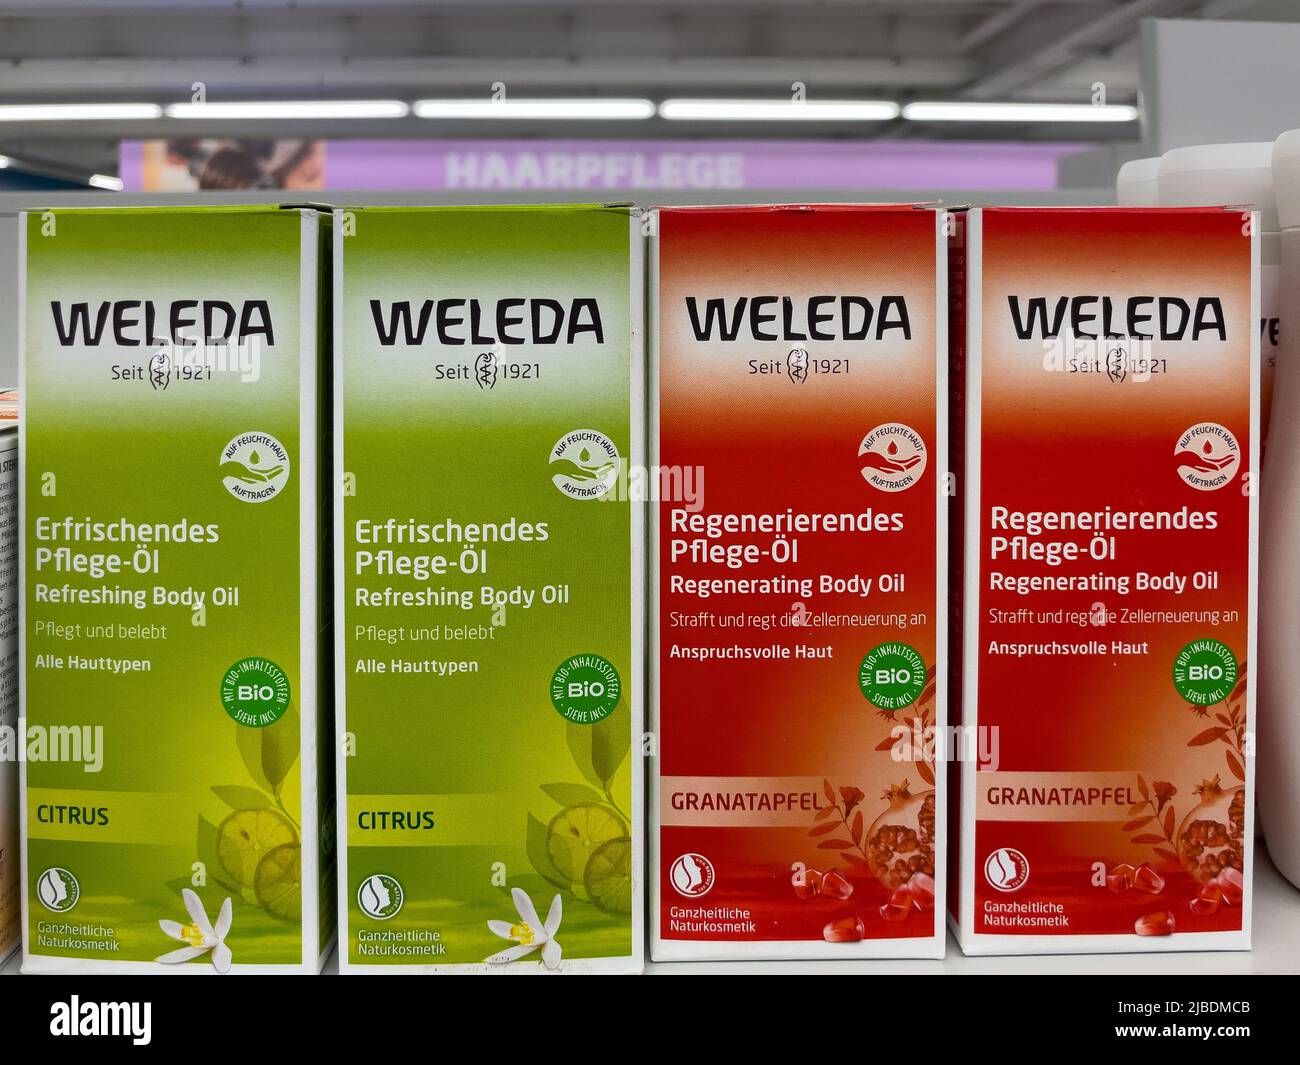 Nürnberg, 4. Juni 2022: Verschiedene Pflegeprodukte der Marke Weleda stehen im Regal auf dem deutschen Bio-Supermarkt Stockfoto